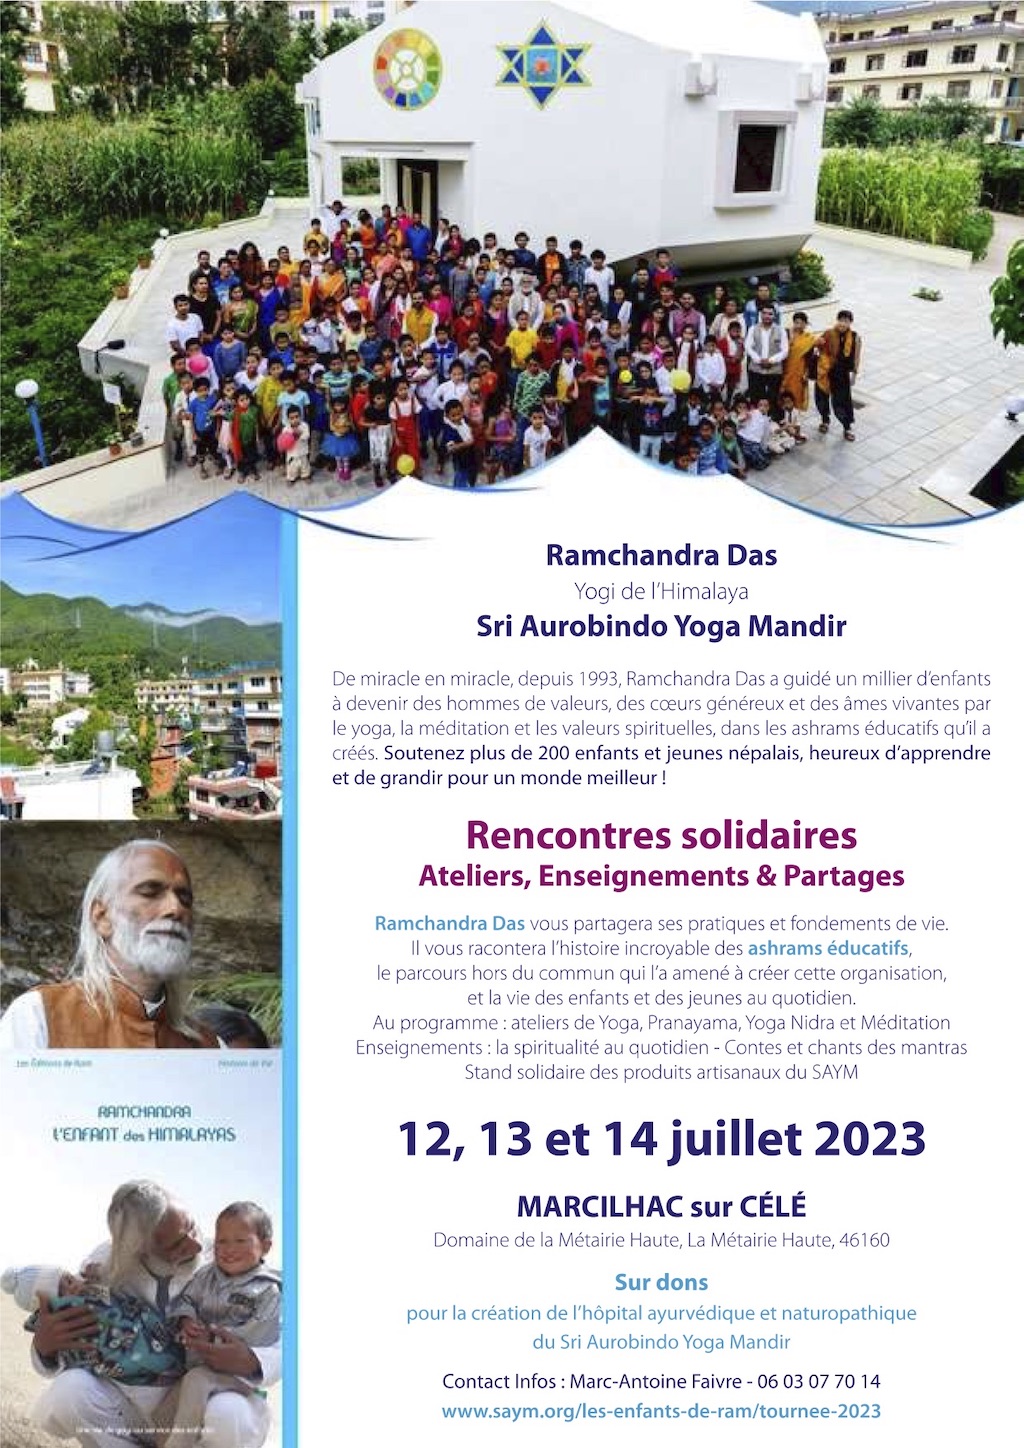 Figeac : Rencontres solidaires à Marcilhac-sur-Célé